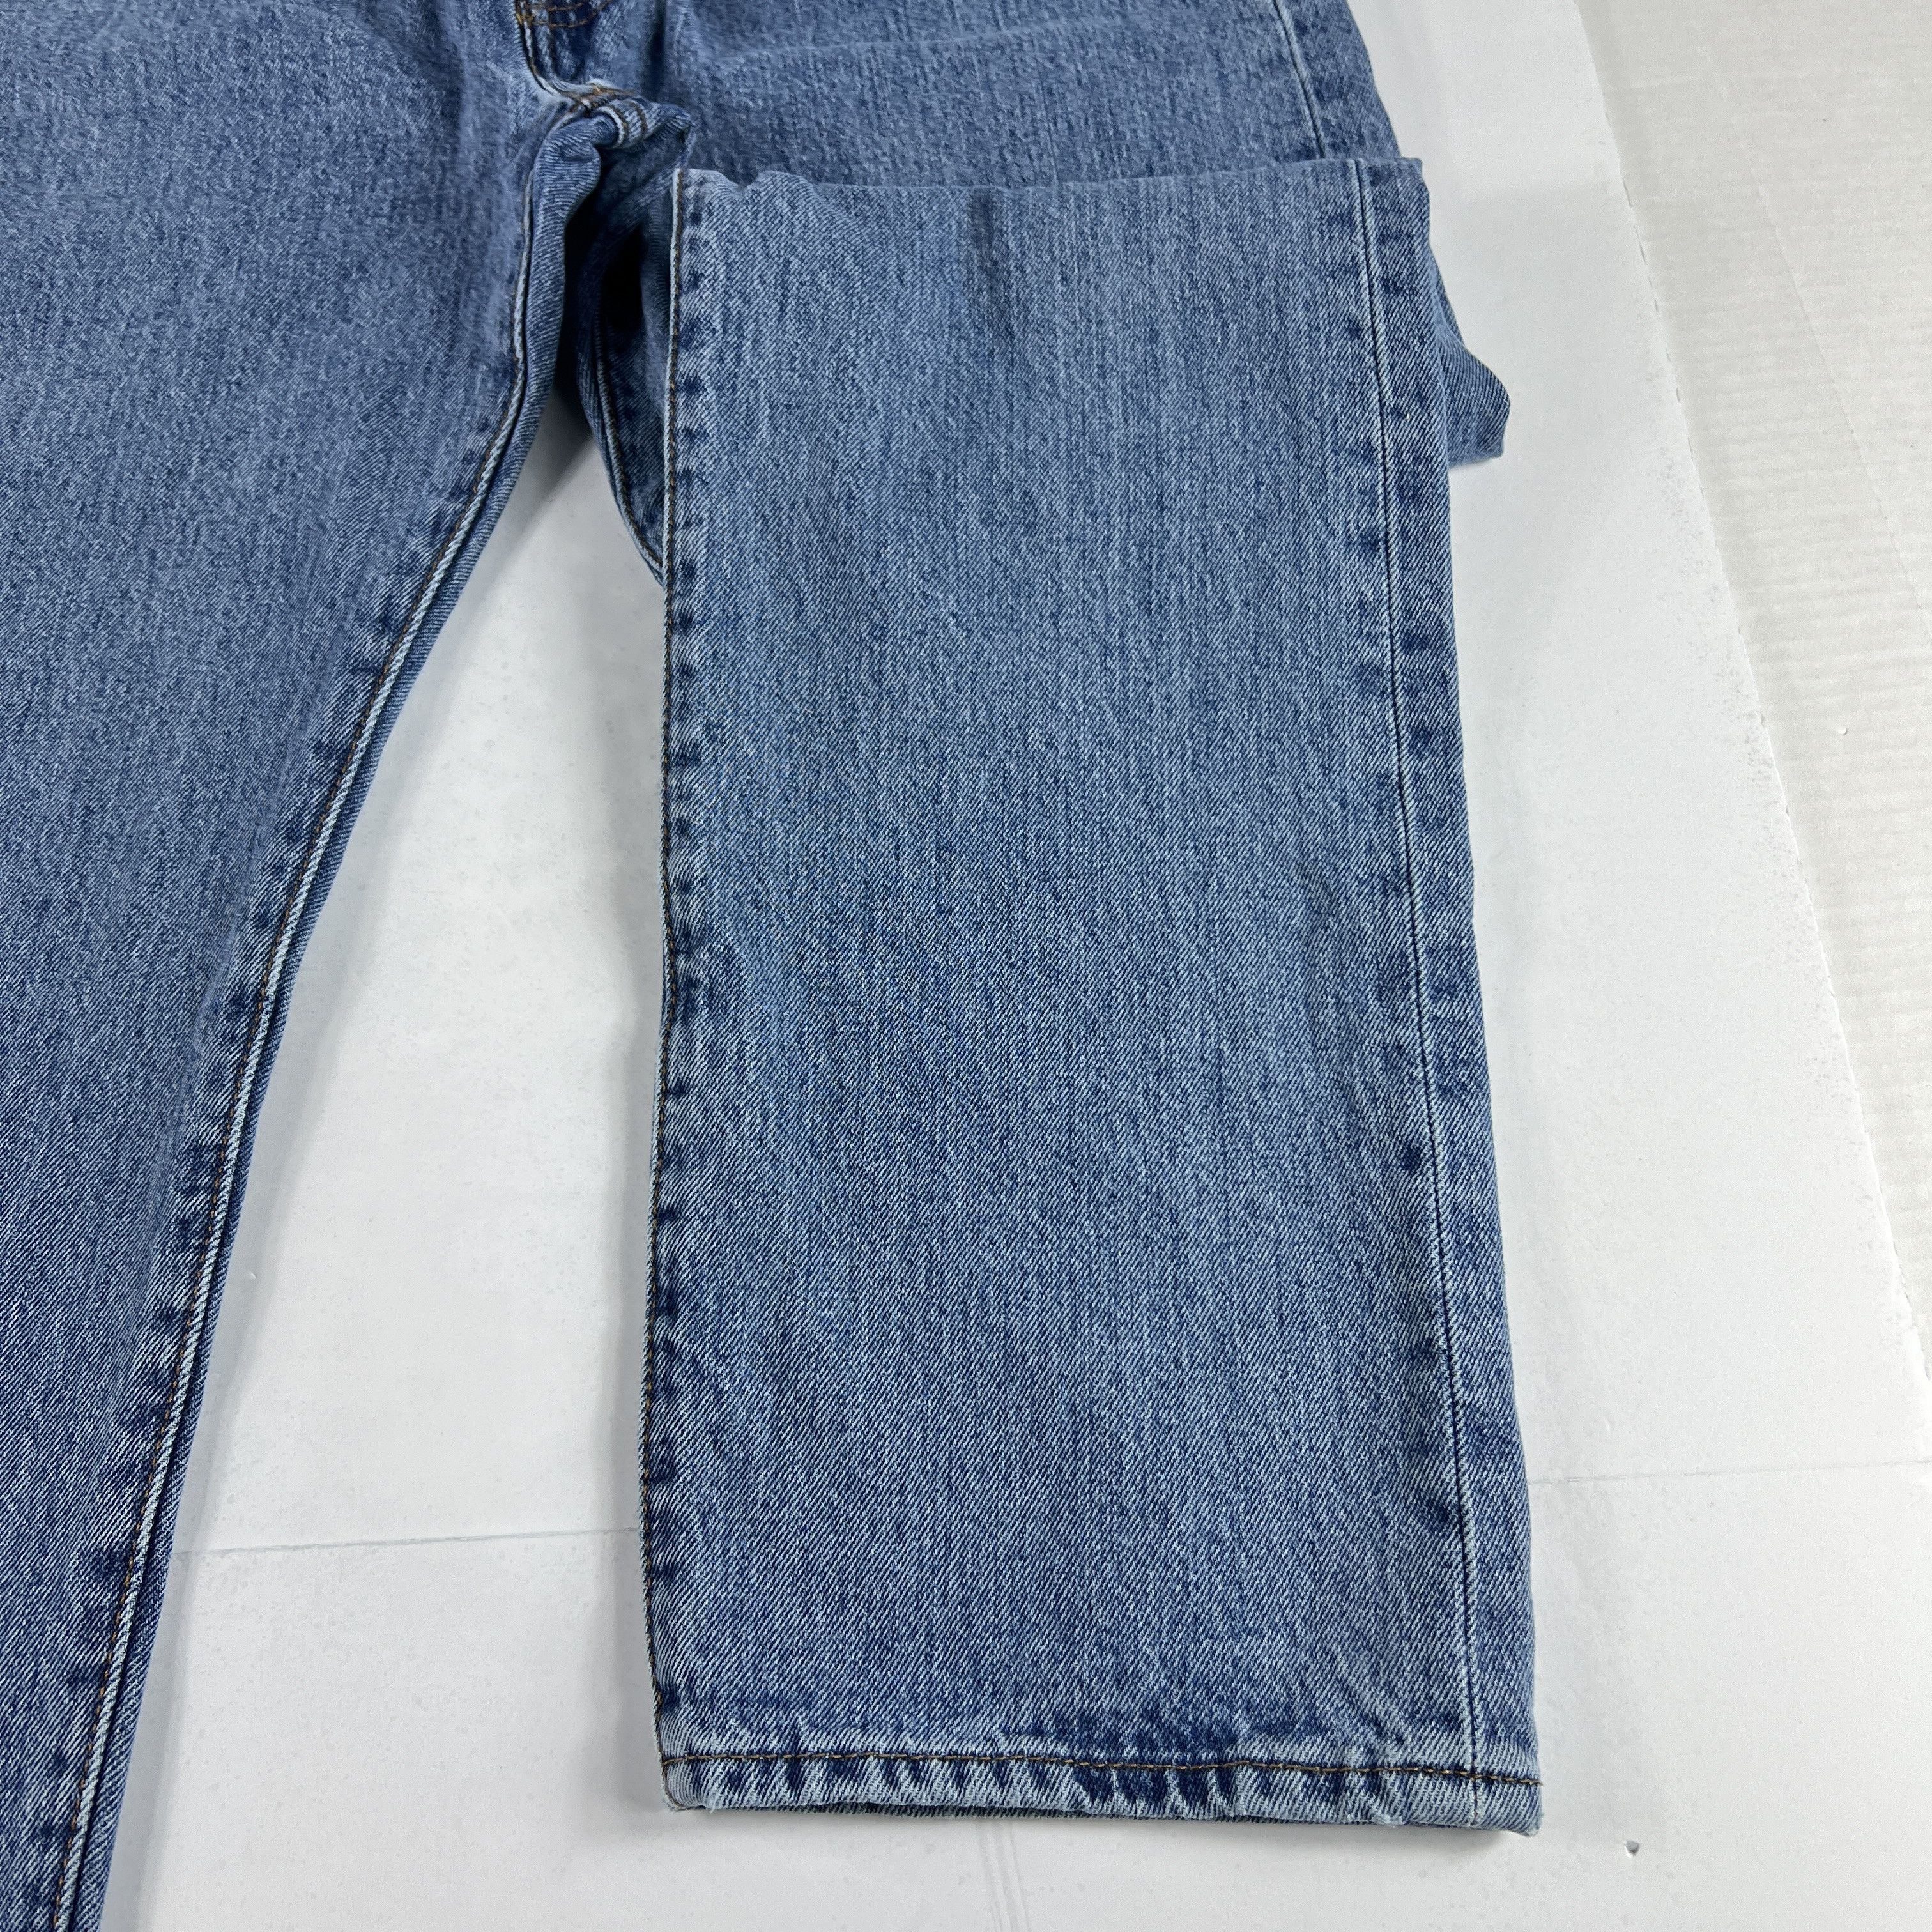 Levi's Levi's Jeans 501 XX Original Straight Blue Cotton Denim Size US 33 - 5 Thumbnail